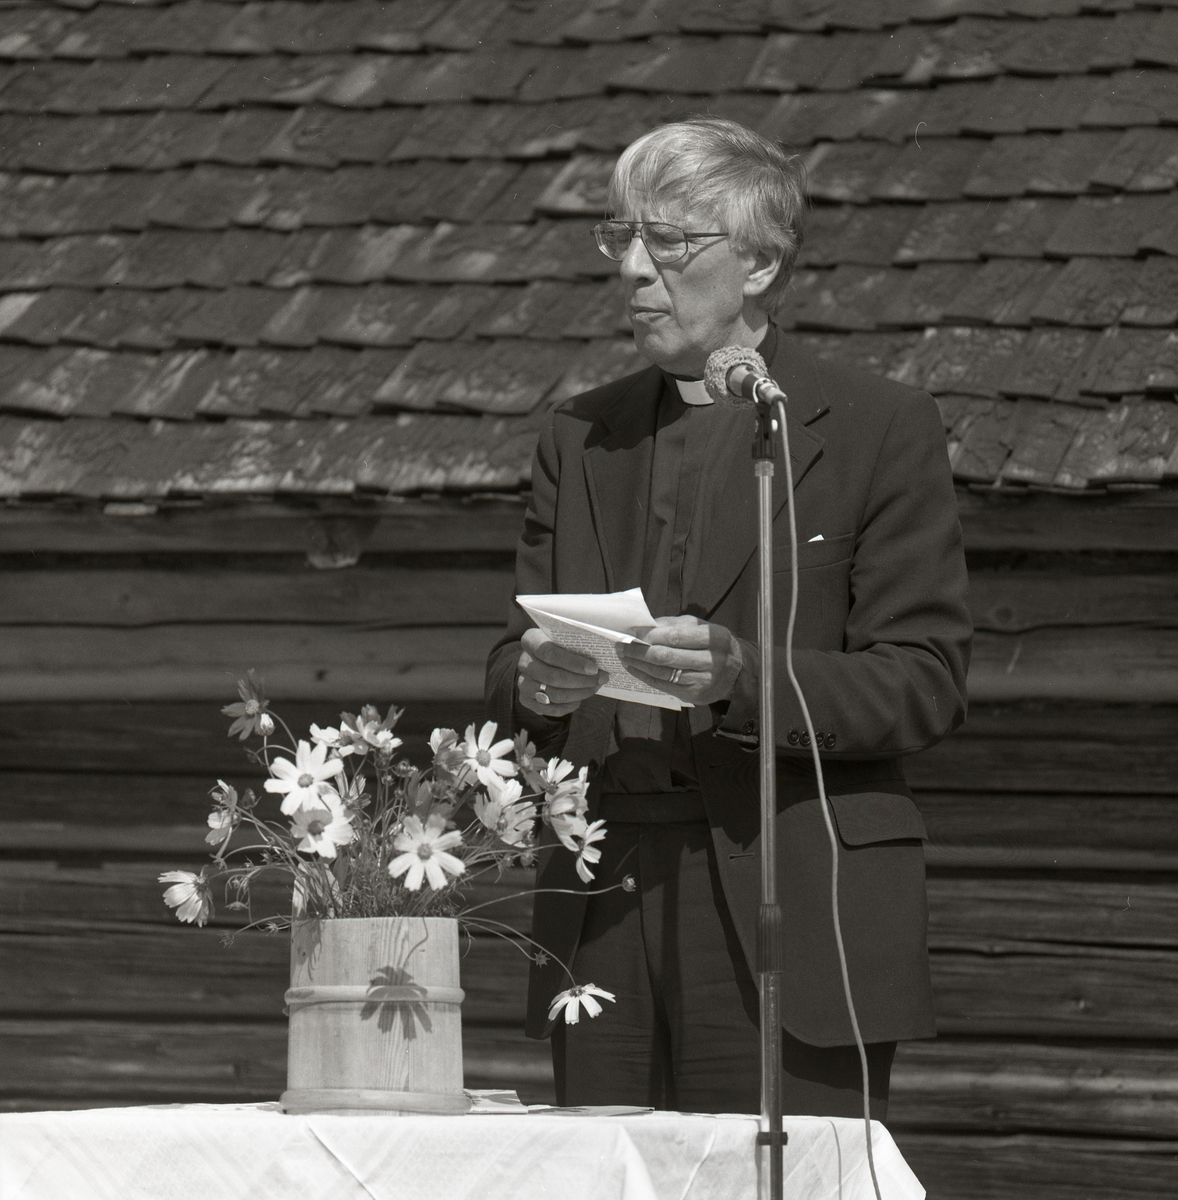 En man klädd i prästkläder håller ett tal vid mikrofonen. Bordet har en vit duk och en kruka av trä med blommor i. Bakom är en vägg i trä och tak av tegel. Harsa 5 augusti 1990.